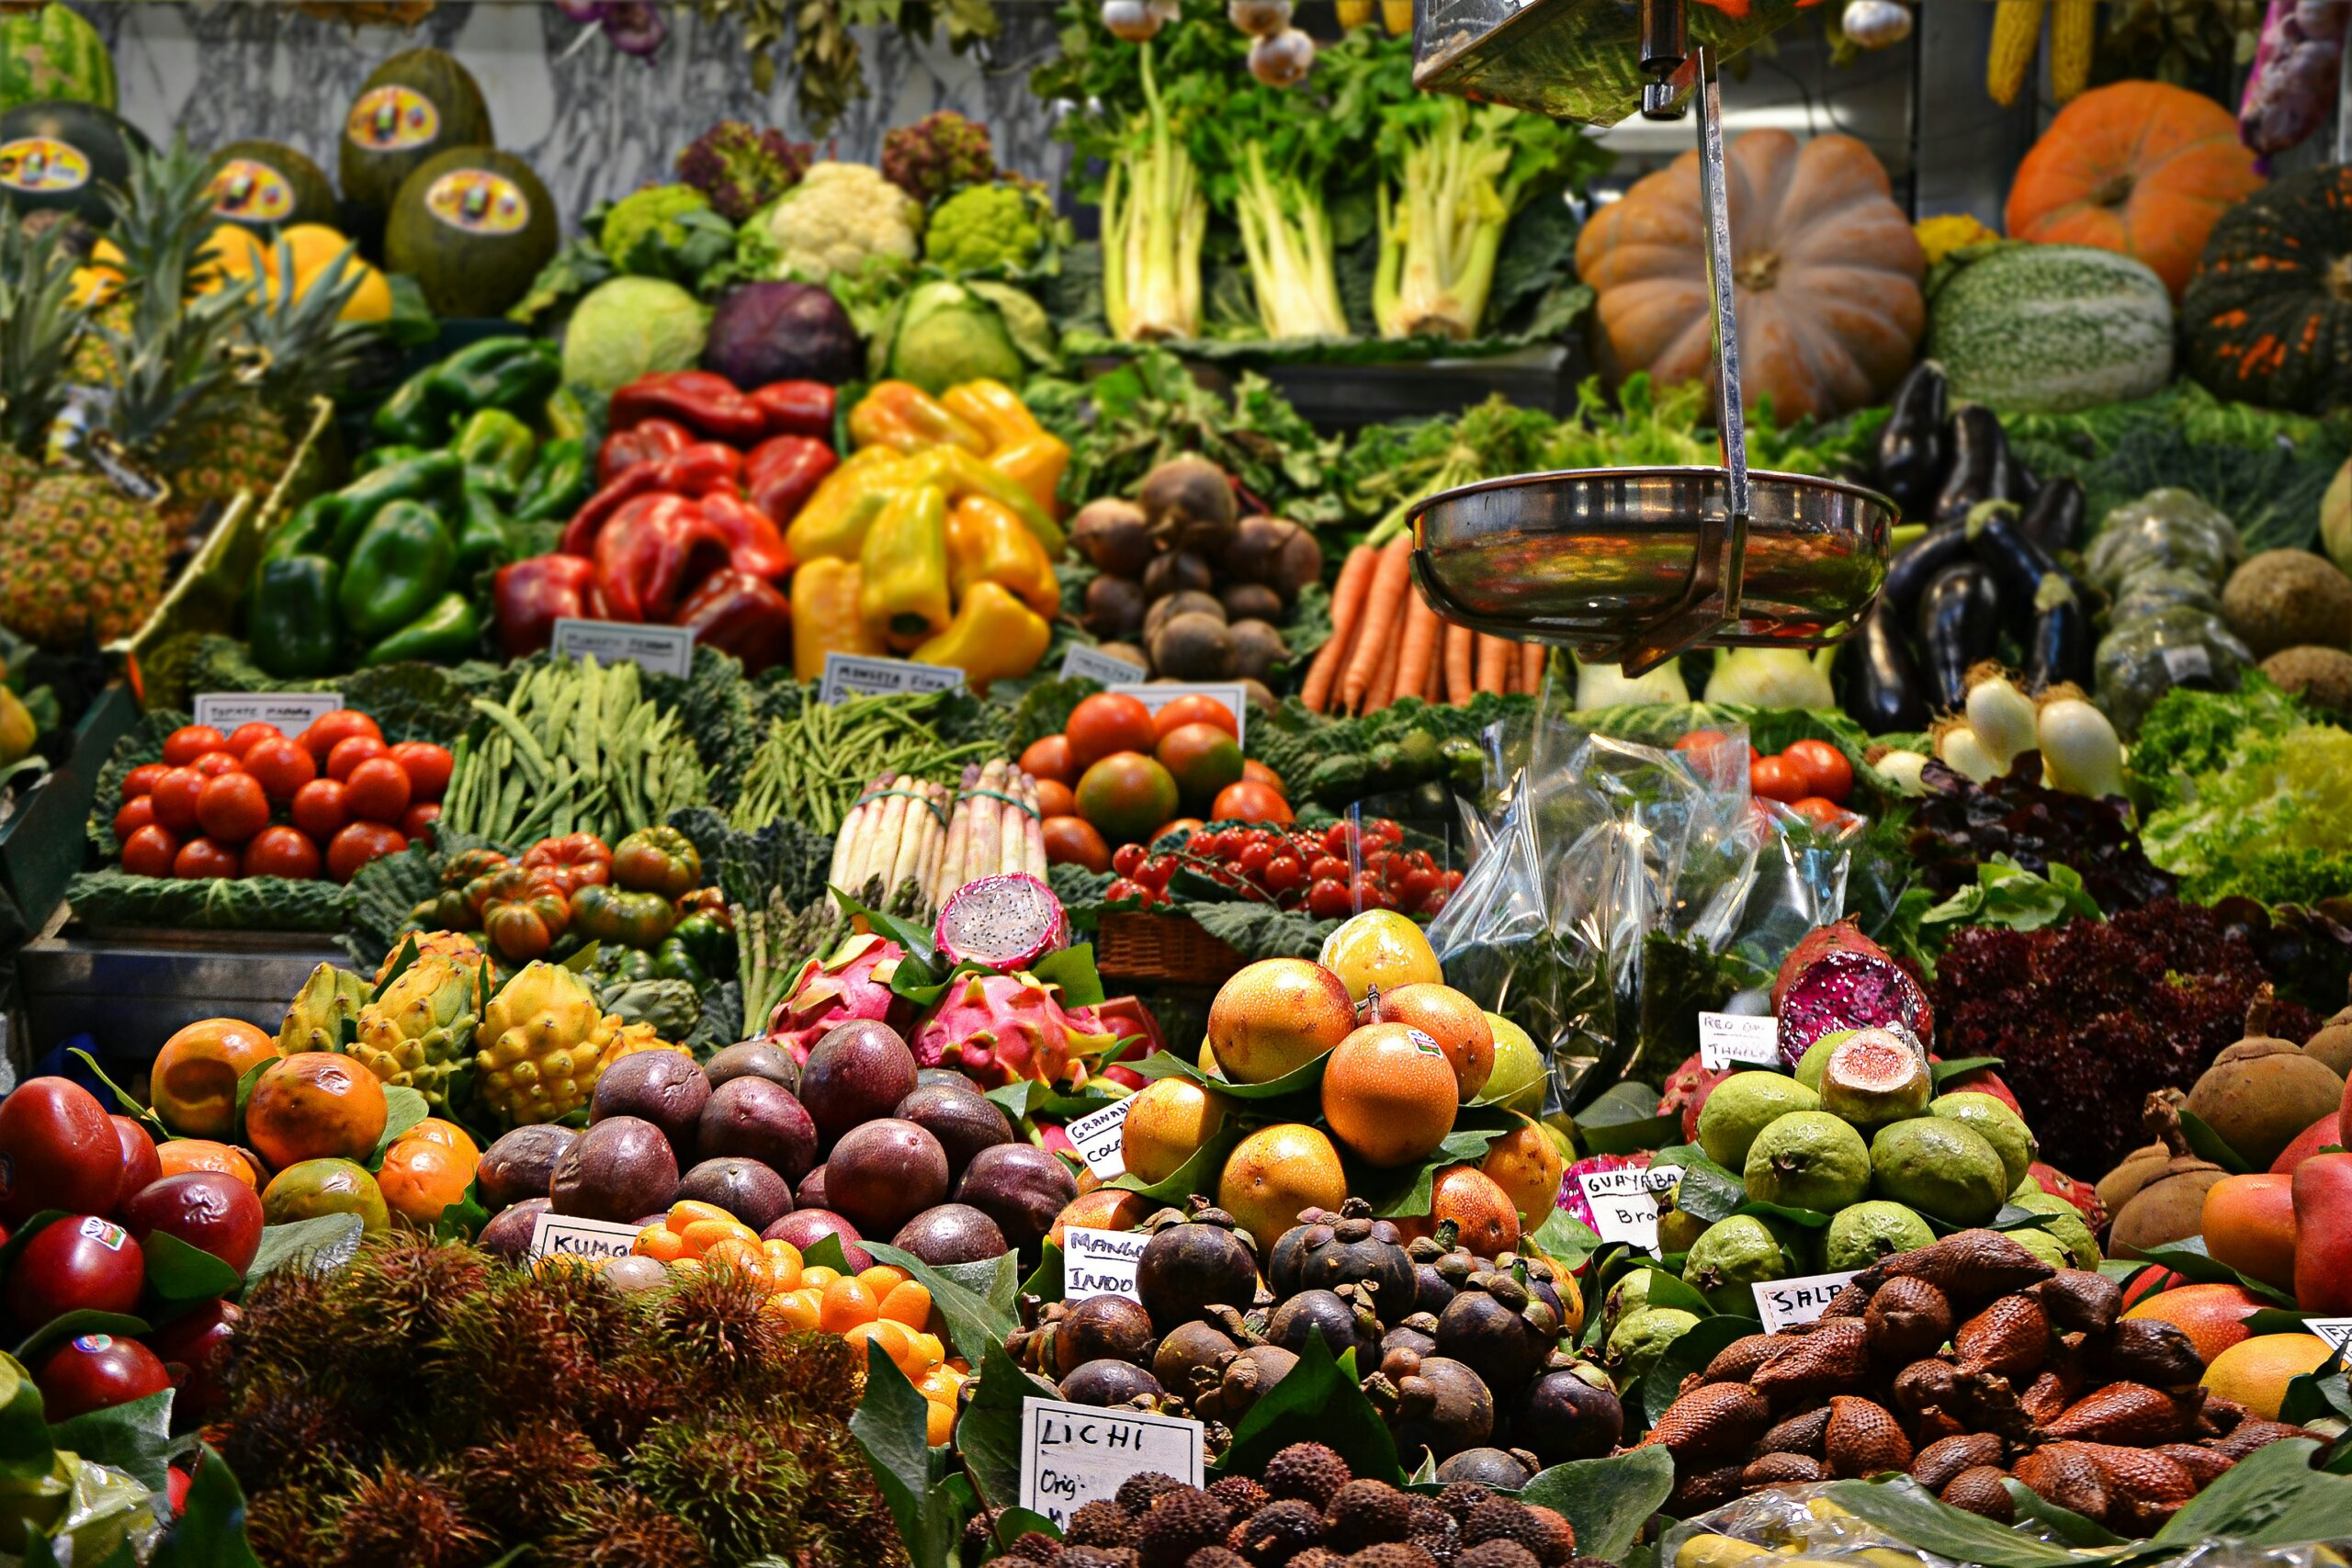 Фруктовая продукция. Овощи и фрукты. Овощи на рынке. Фруктовый рынок. Изобилие овощей и фруктов на рынке.